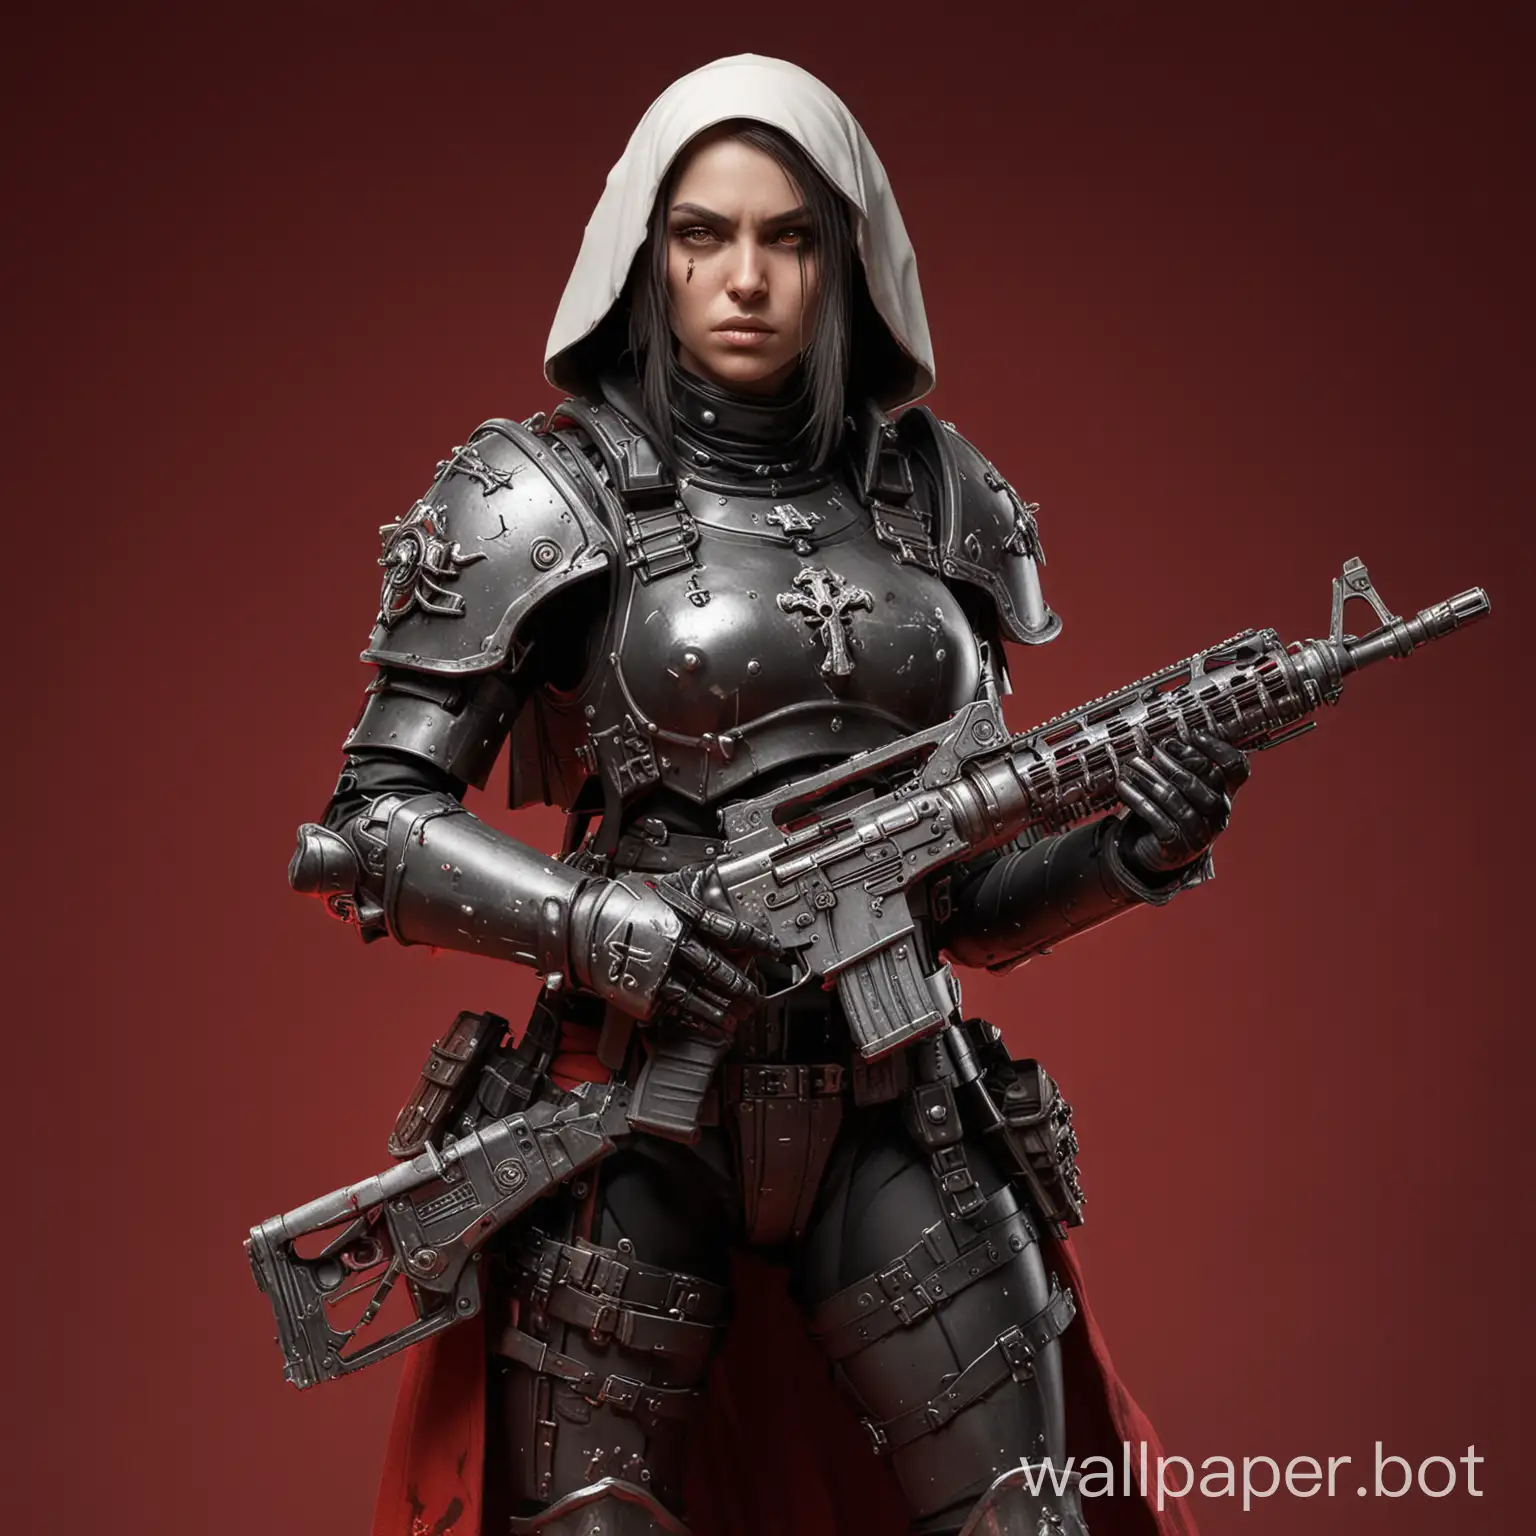 nun girl, heavy armor, full body Warhammer 40000 Sisters of Battle, cross on neck, mercenary full armor holds submachine gun red background